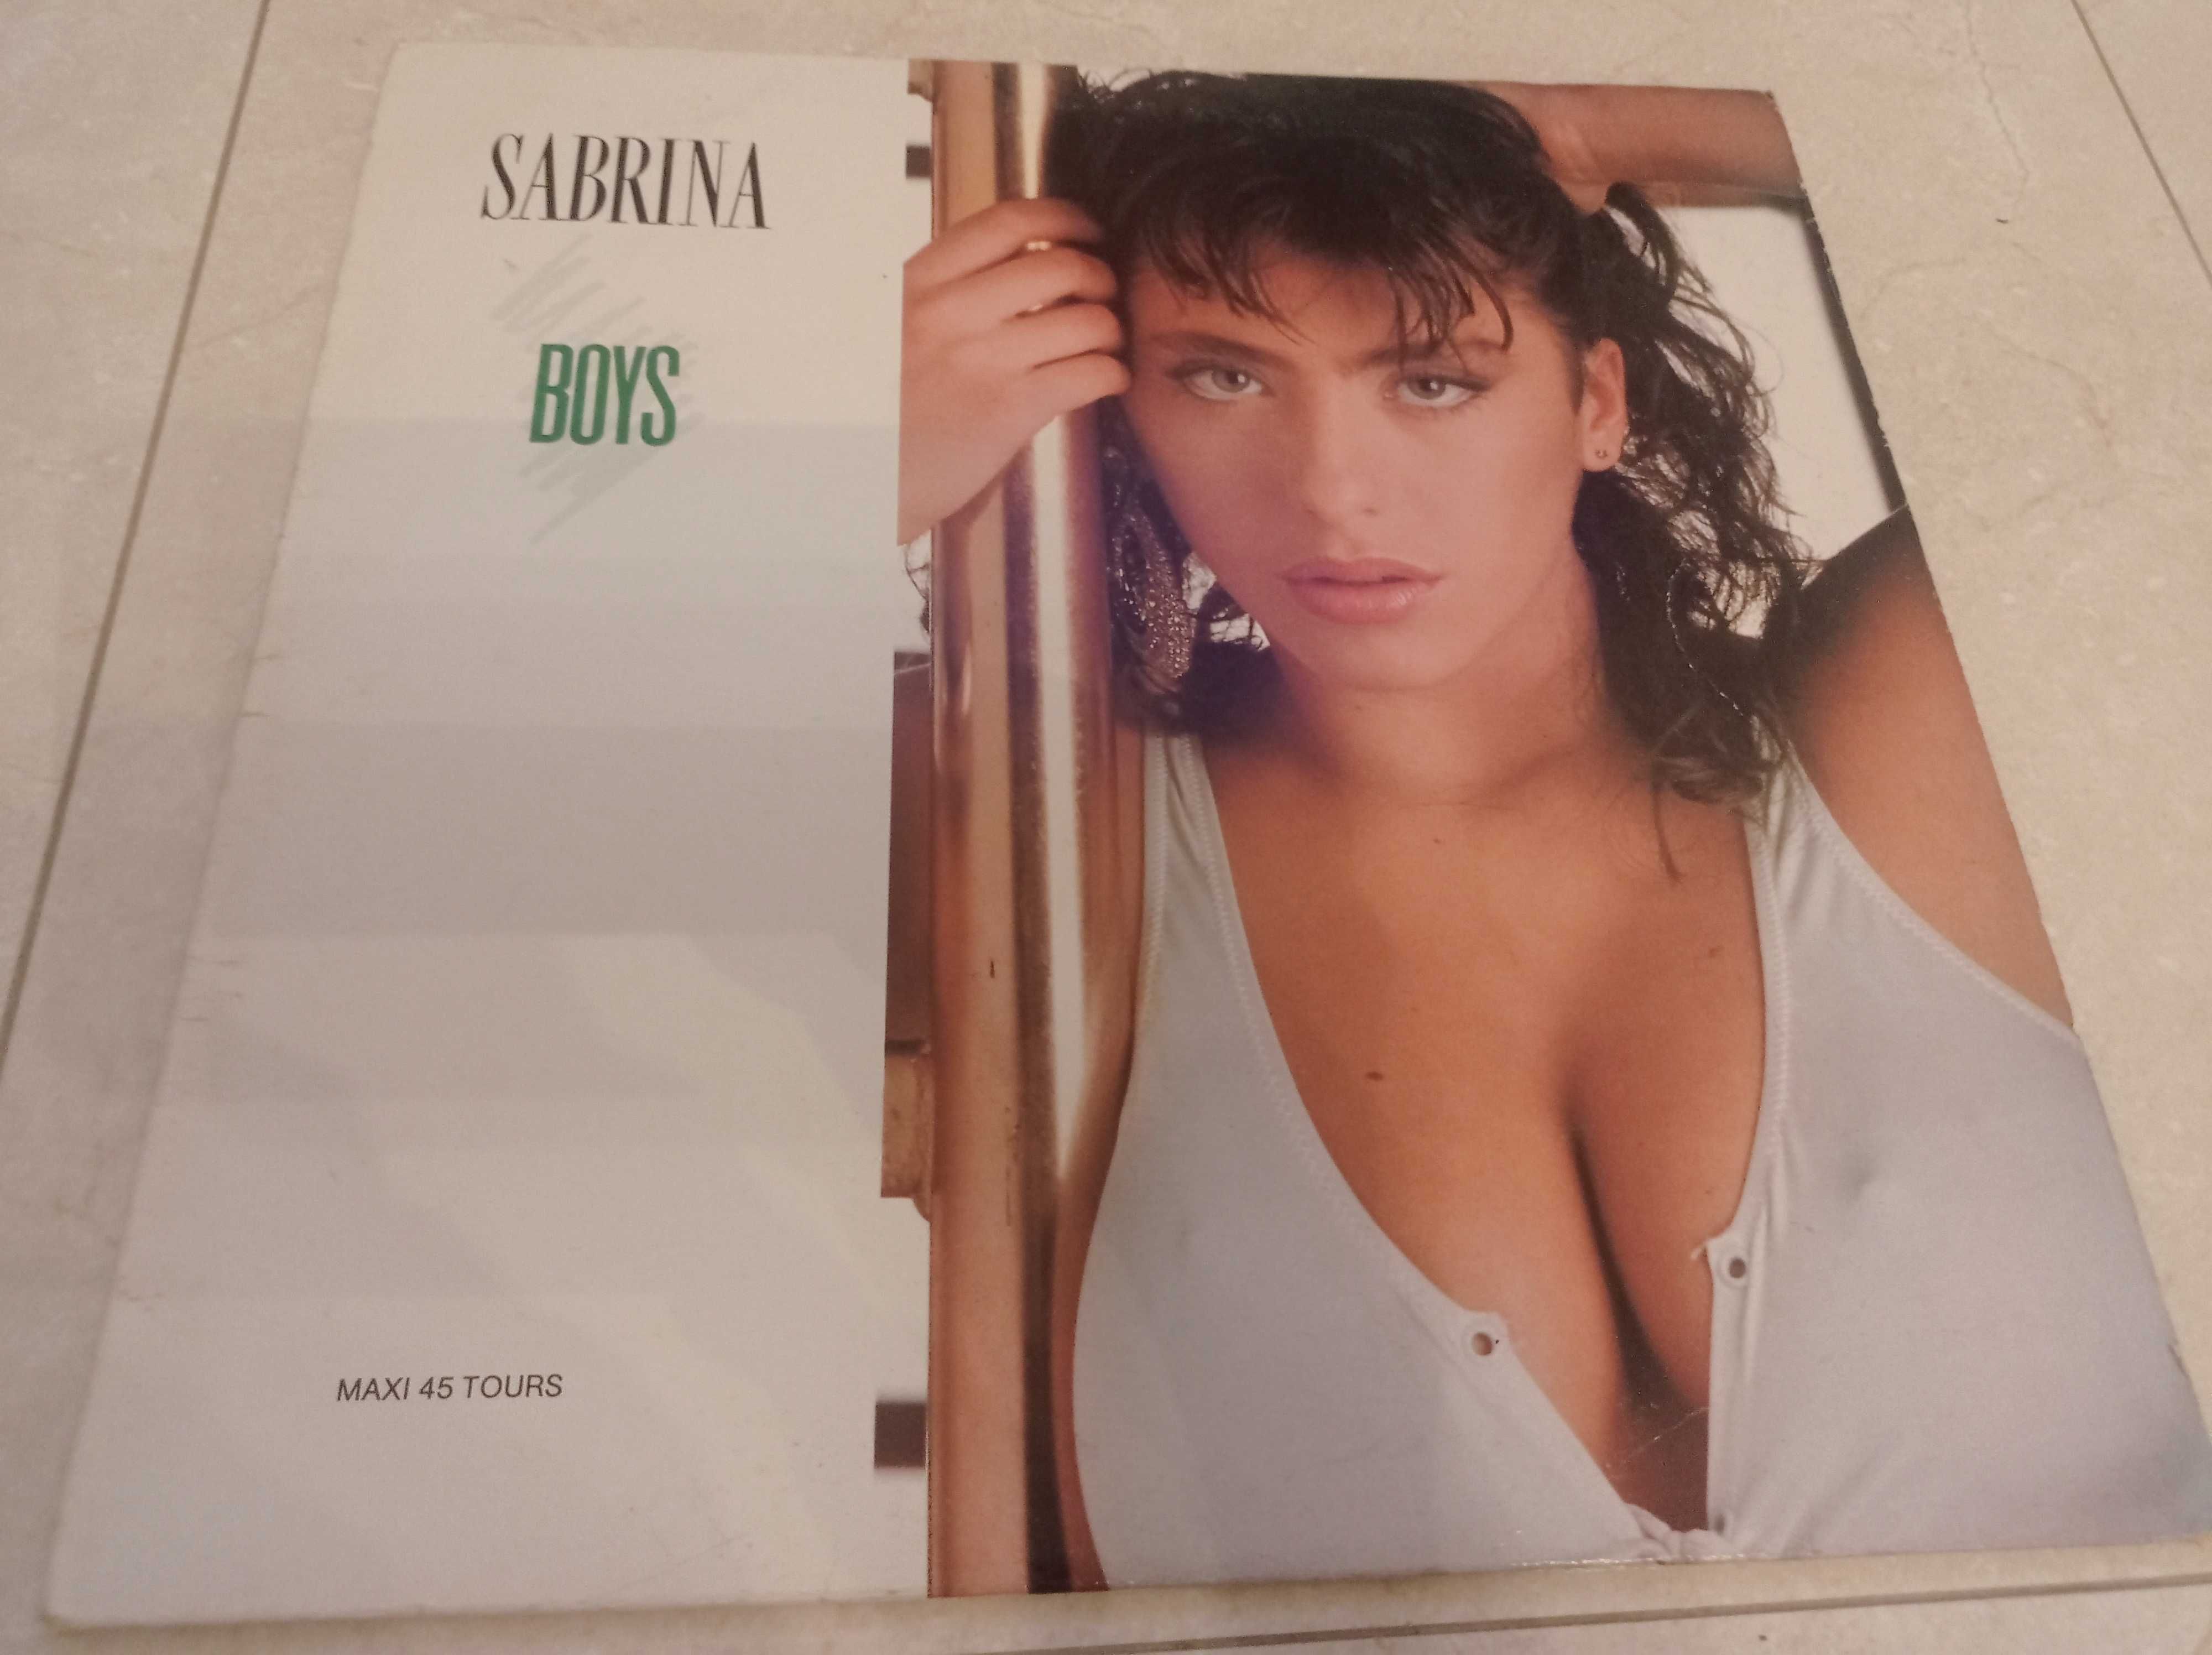 Sabrina – Boys (Summertime Love Vinyl) em excelente estado